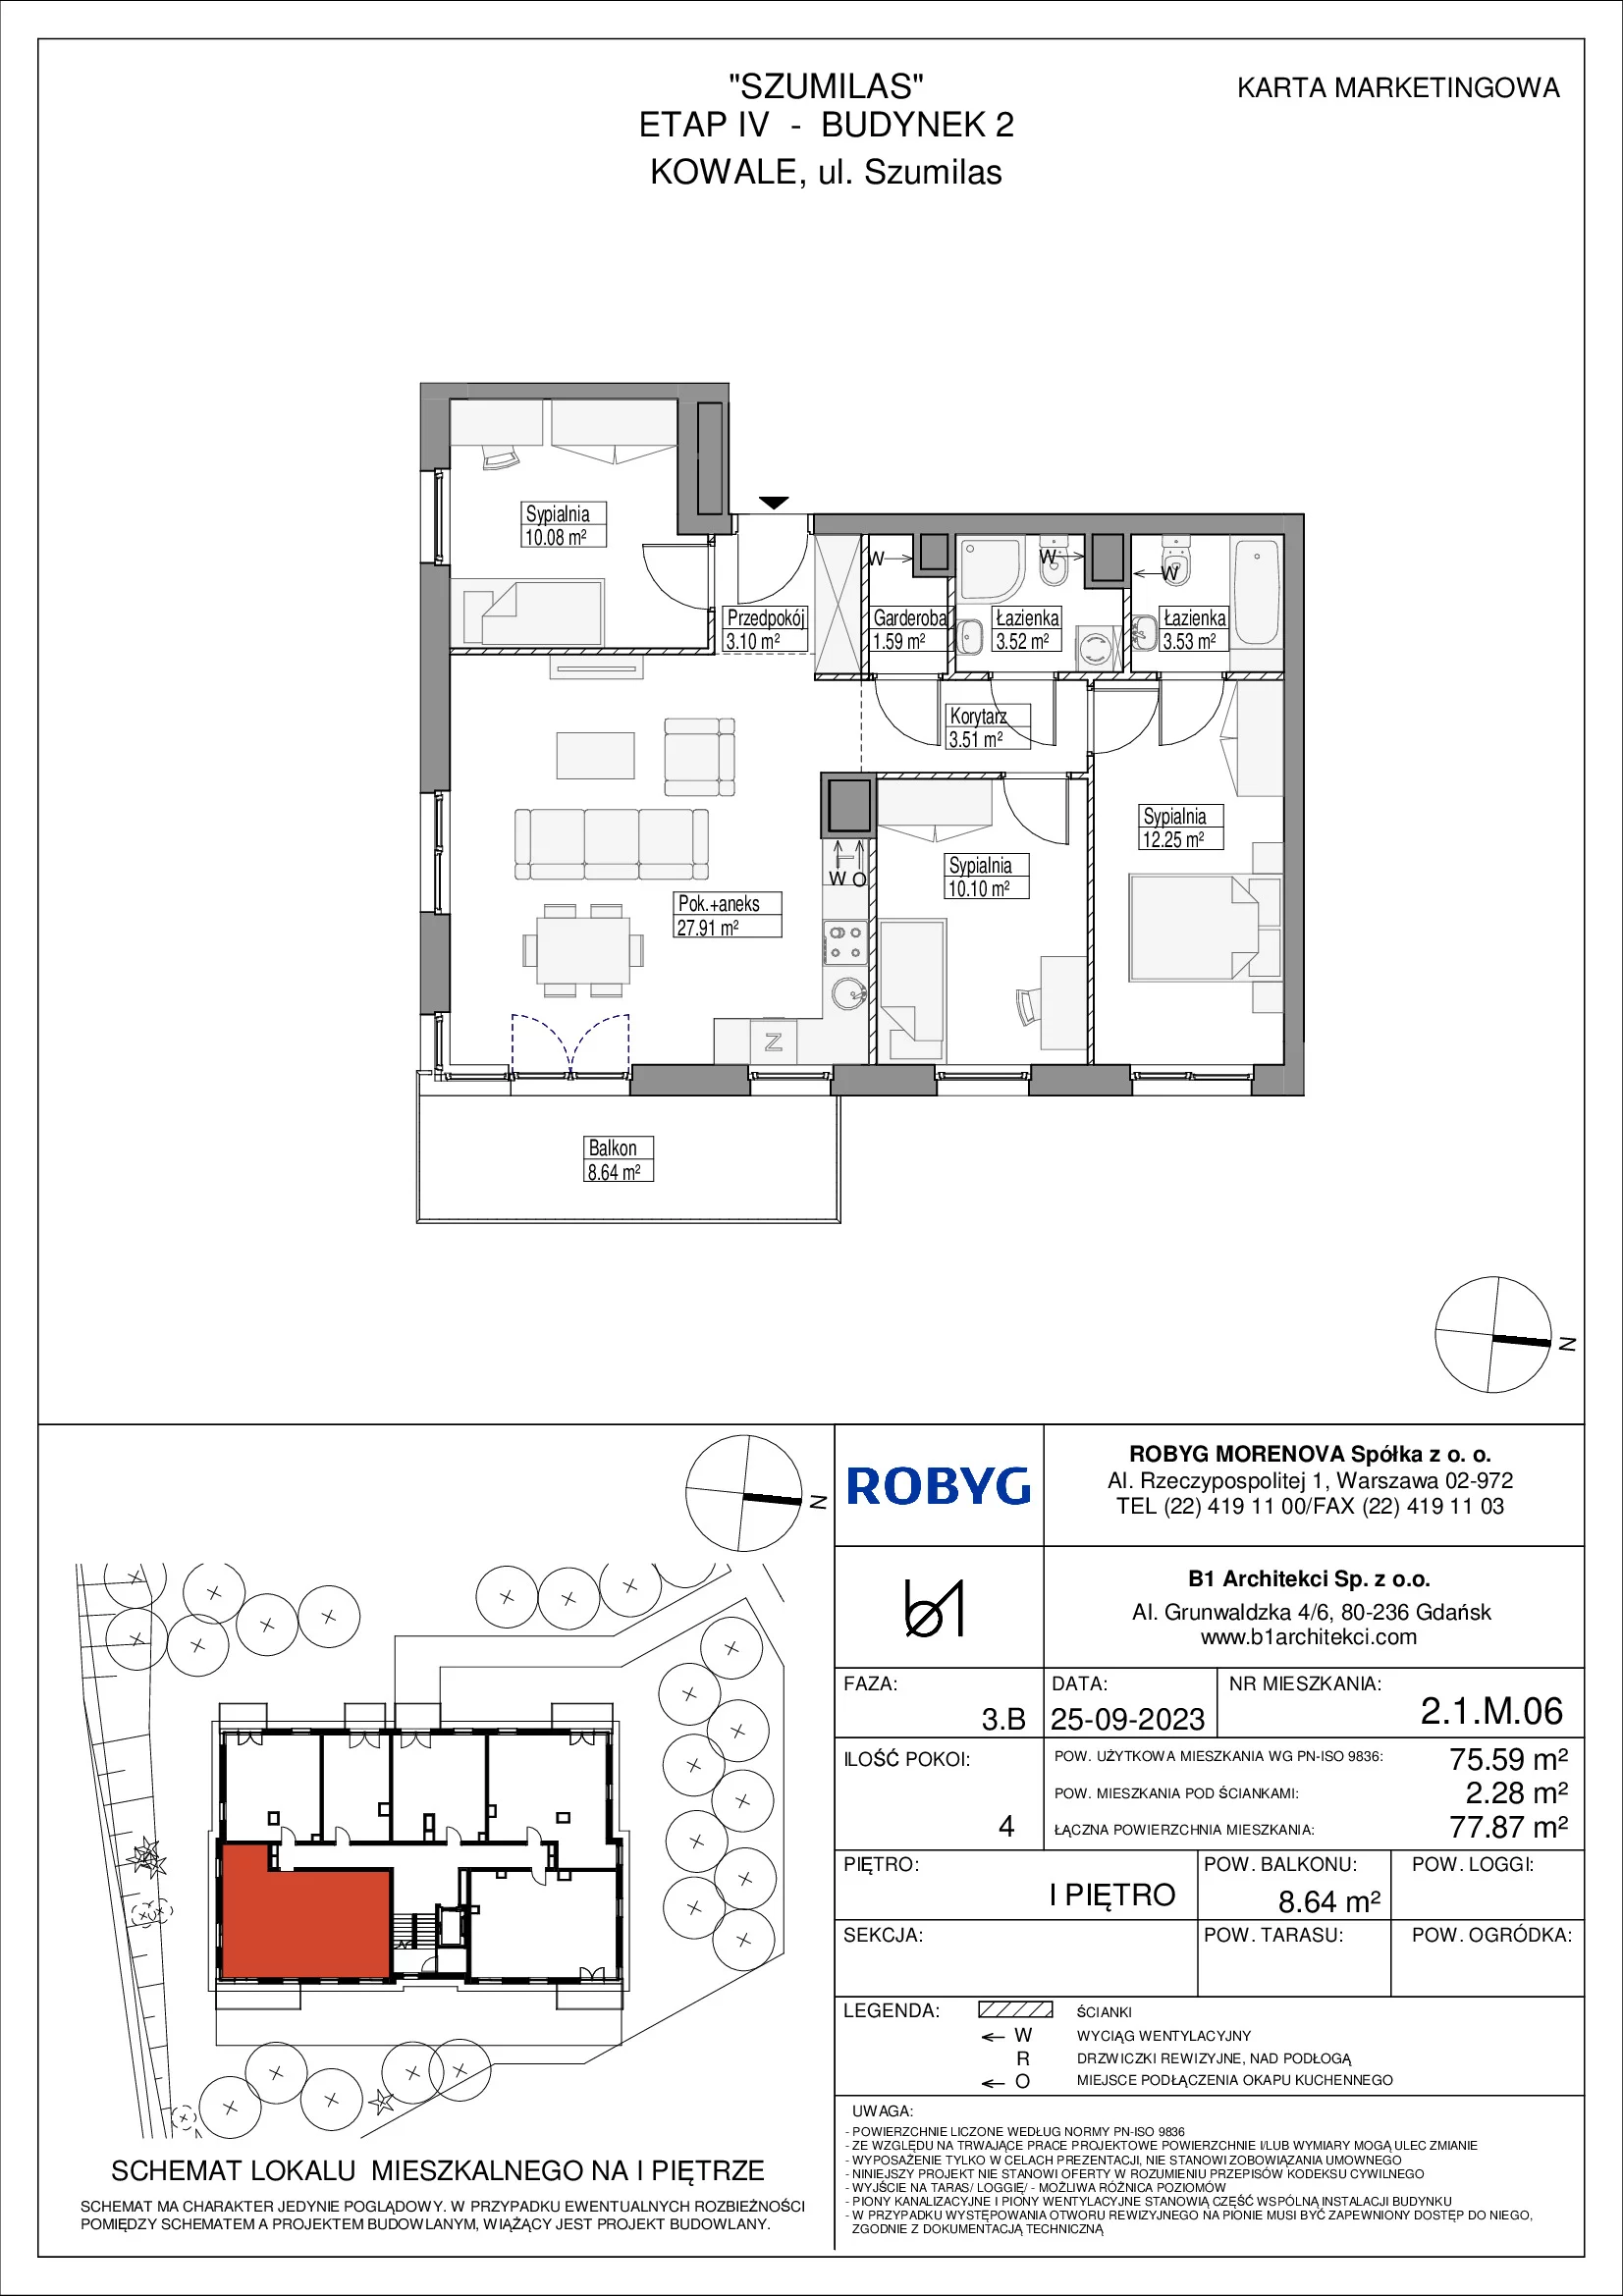 Mieszkanie 75,59 m², piętro 1, oferta nr 2.1M06, Szumilas, Kowale, ul. Magazynowa